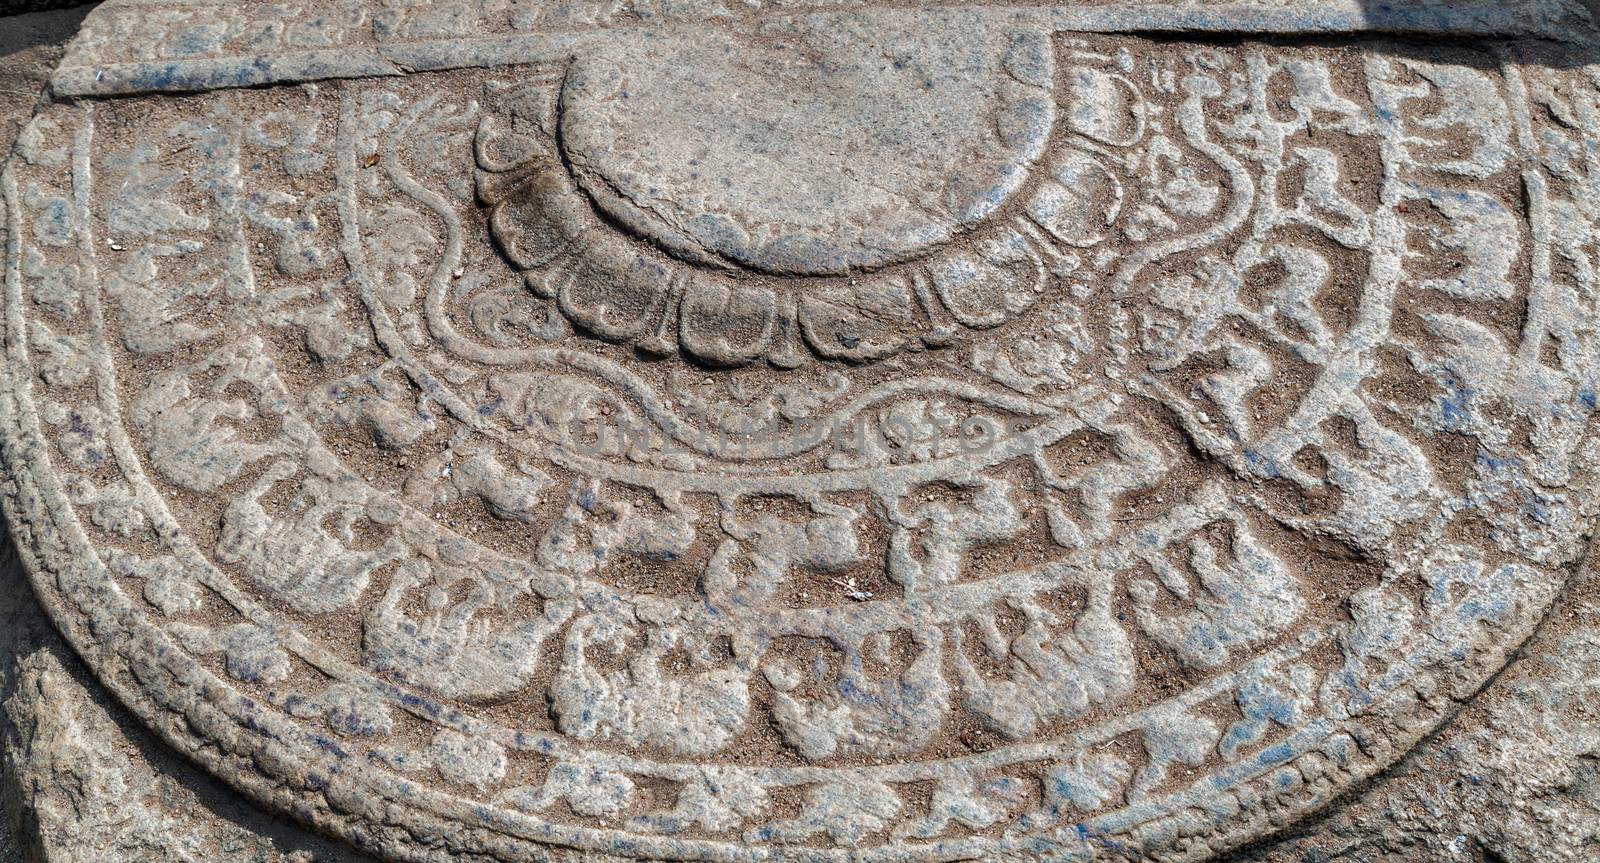 Sandakada pahana elephants in Polonnaruwa city temple - medieval capital of Ceylon, UNESCO, Sri Lanka